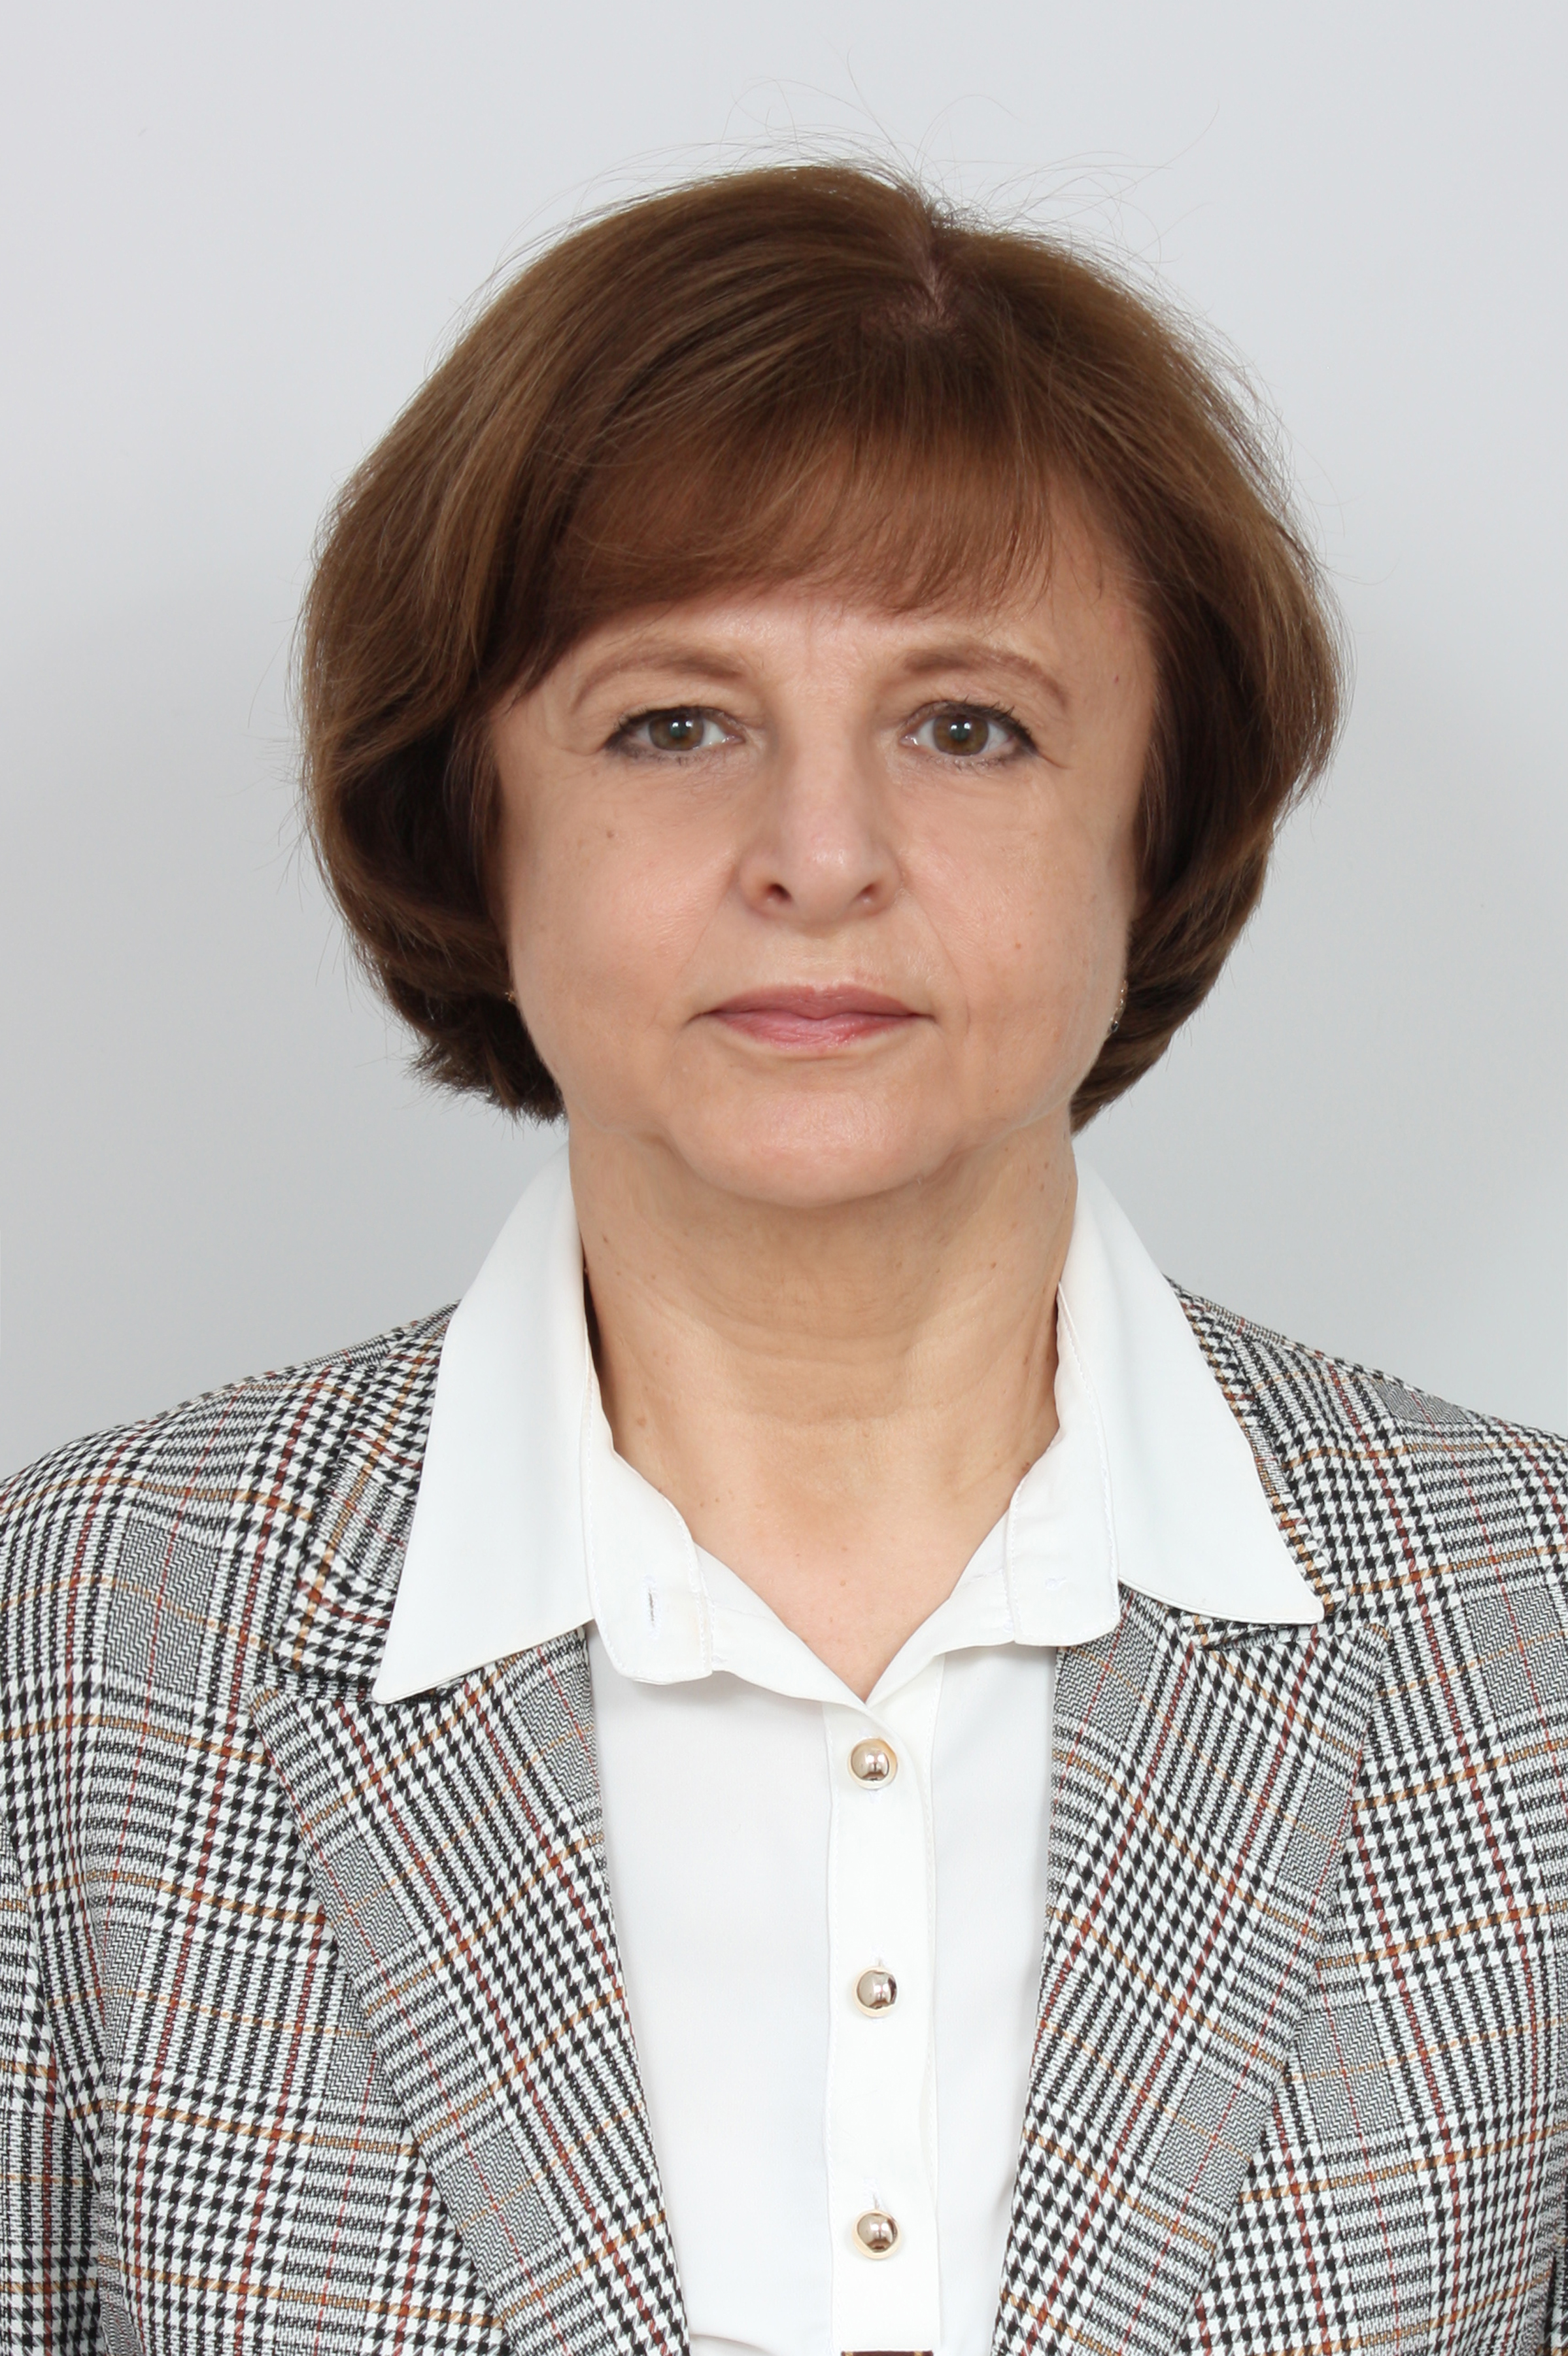                         Mescheryakova Elena
            